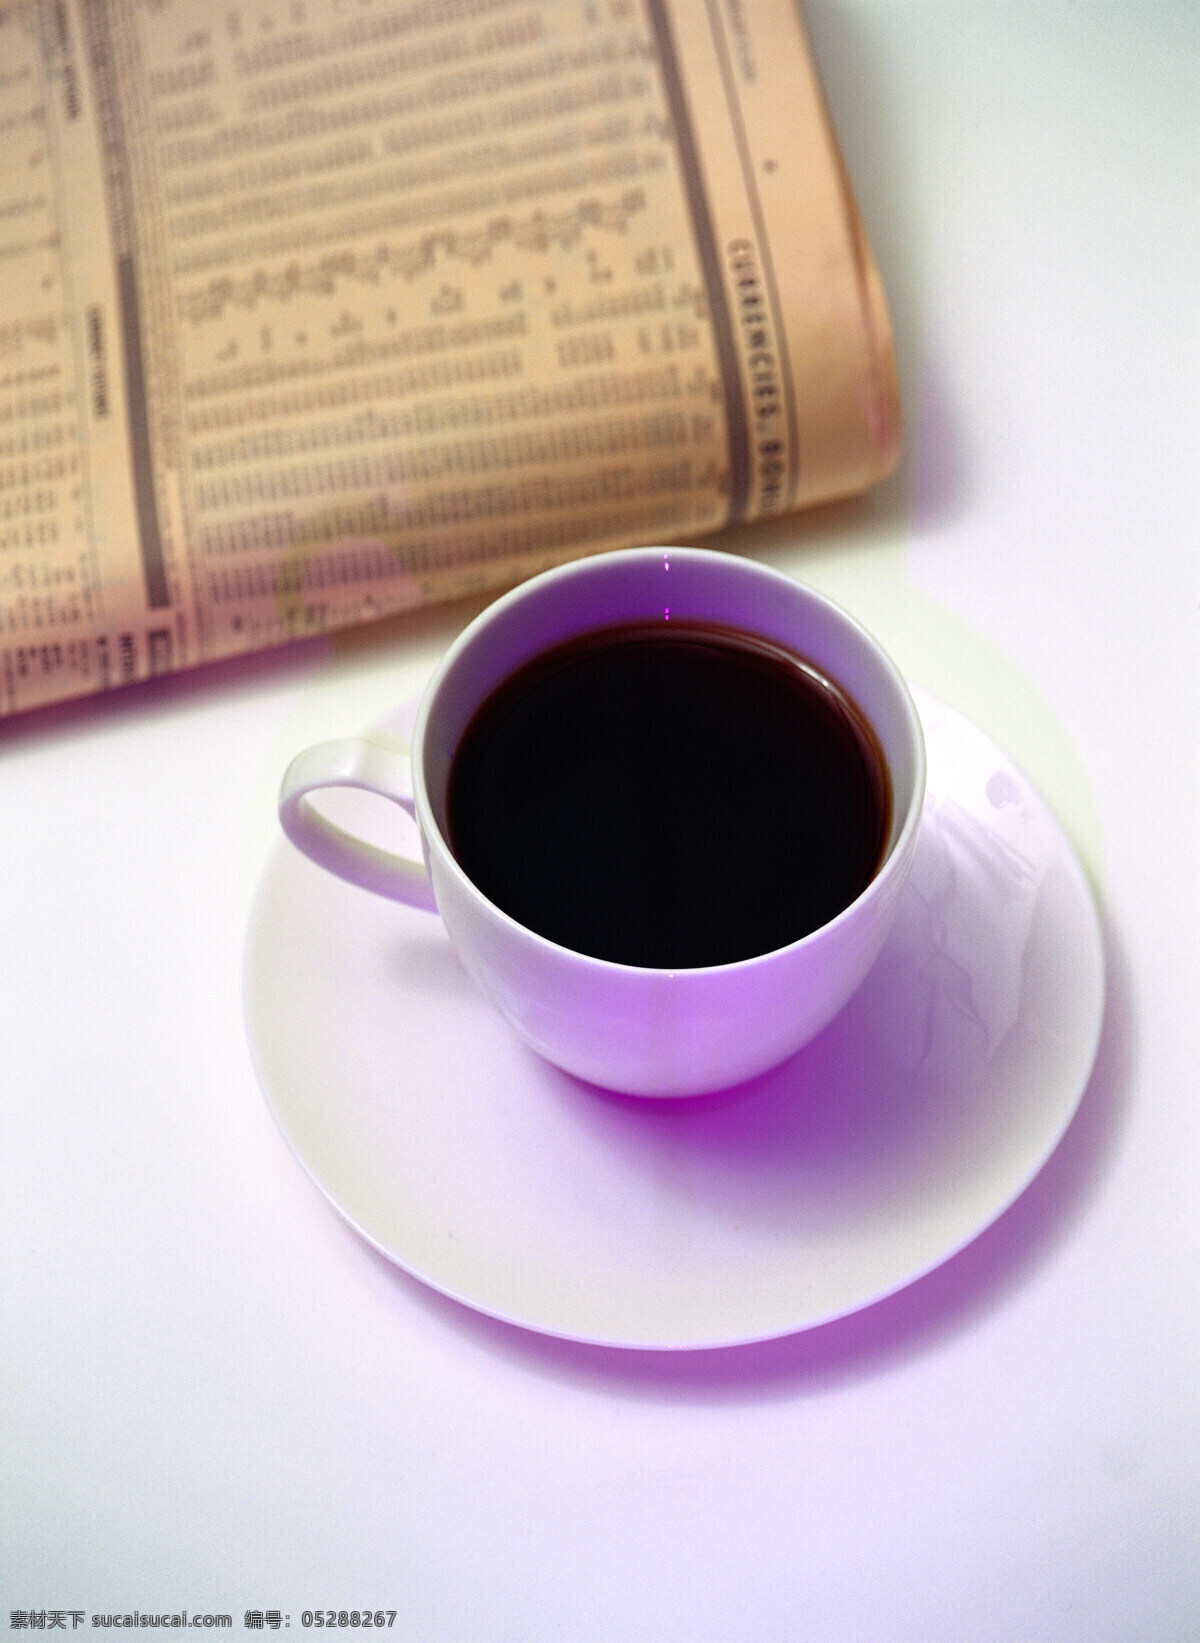 桌子 上书 咖啡 coffee 浓香 褐色 托盘 杯子 陶瓷 紫色 桌面 书本 看书 高清图片 咖啡图片 餐饮美食